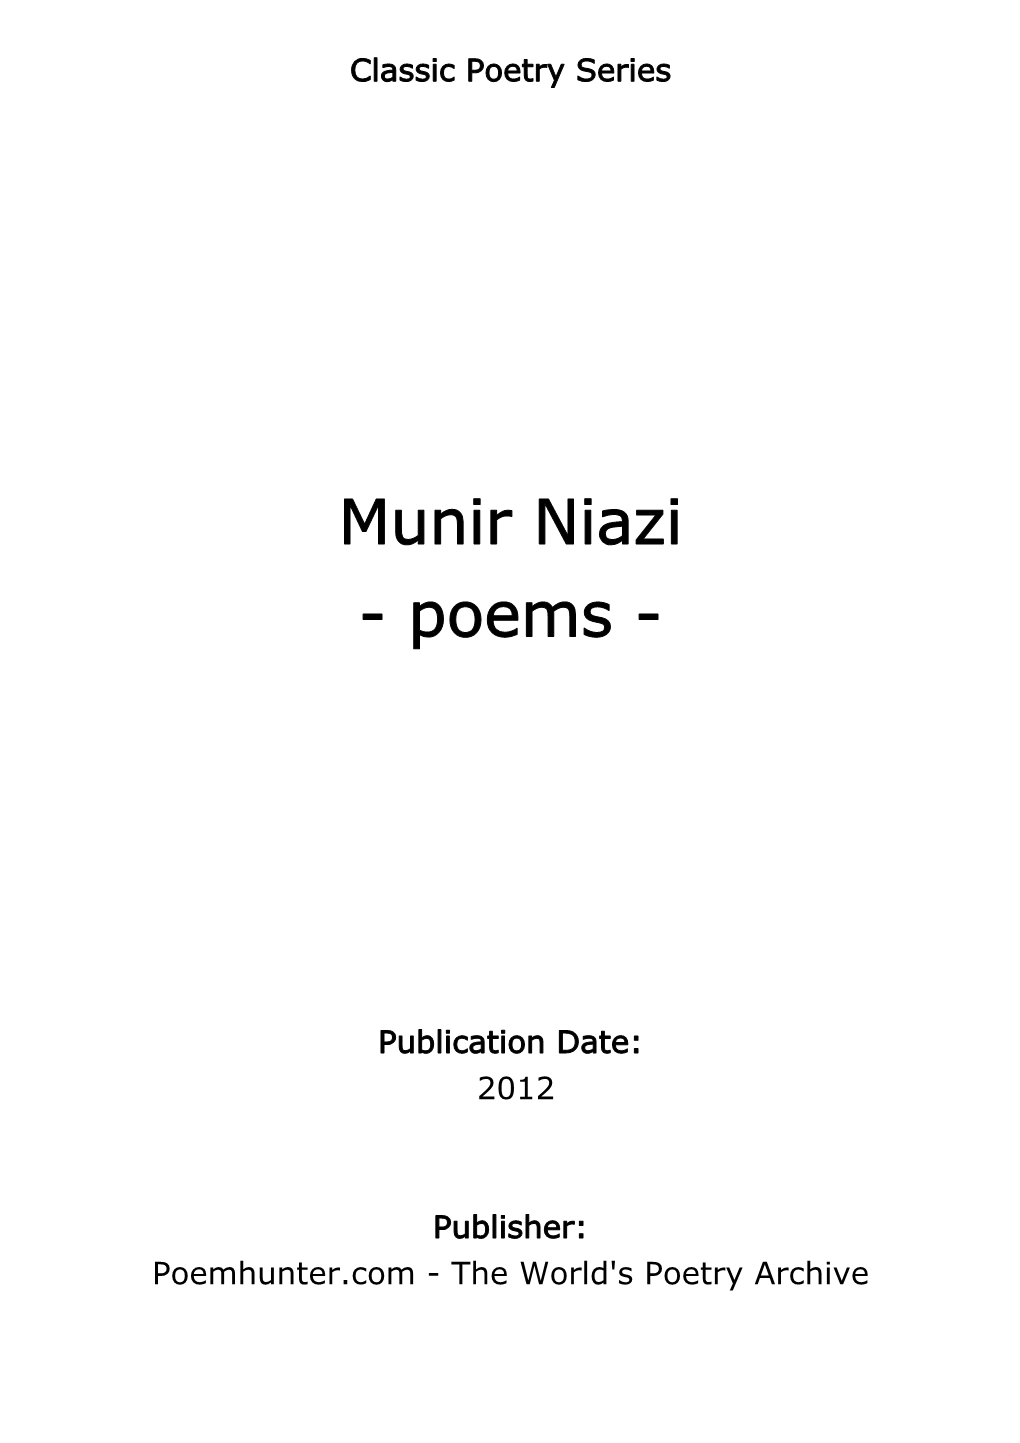 Munir Niazi - Poems